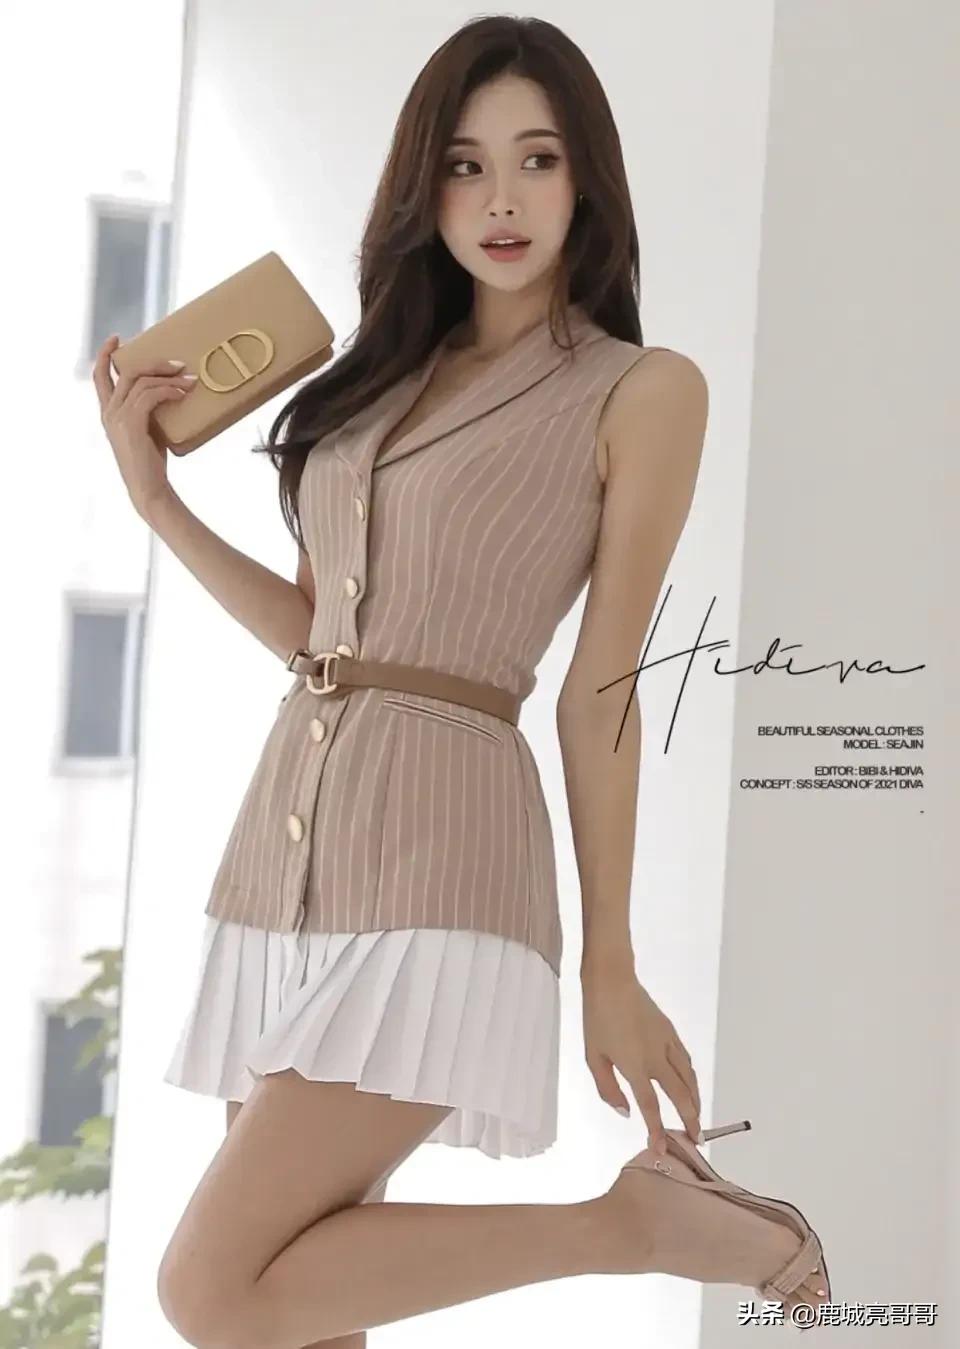 韩国美女模特朴多贤,棕色上衣百褶裙,真好看